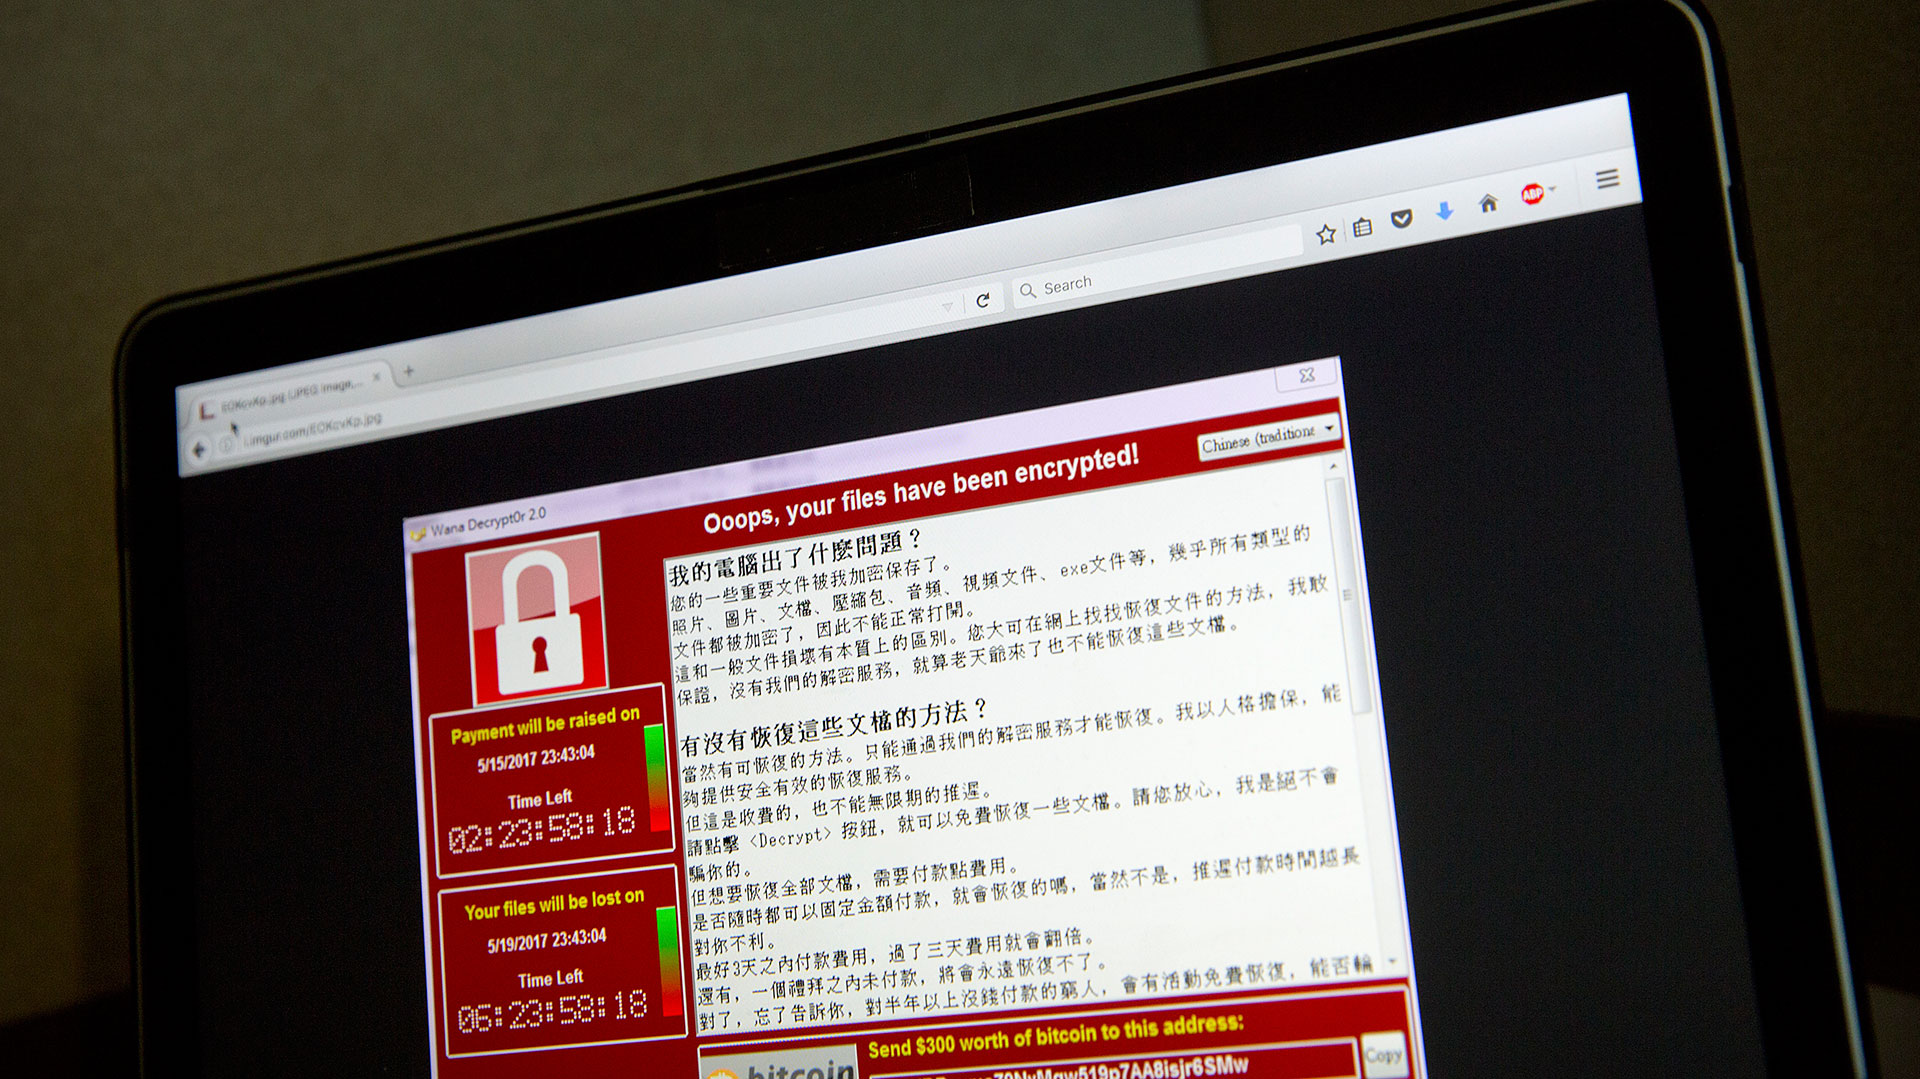 Una captura de pantalla del mensaje que se veía en las computadoras afectadas por WannaCry, uno de los ransomware más dañinos de los últimos tiempos (AP)